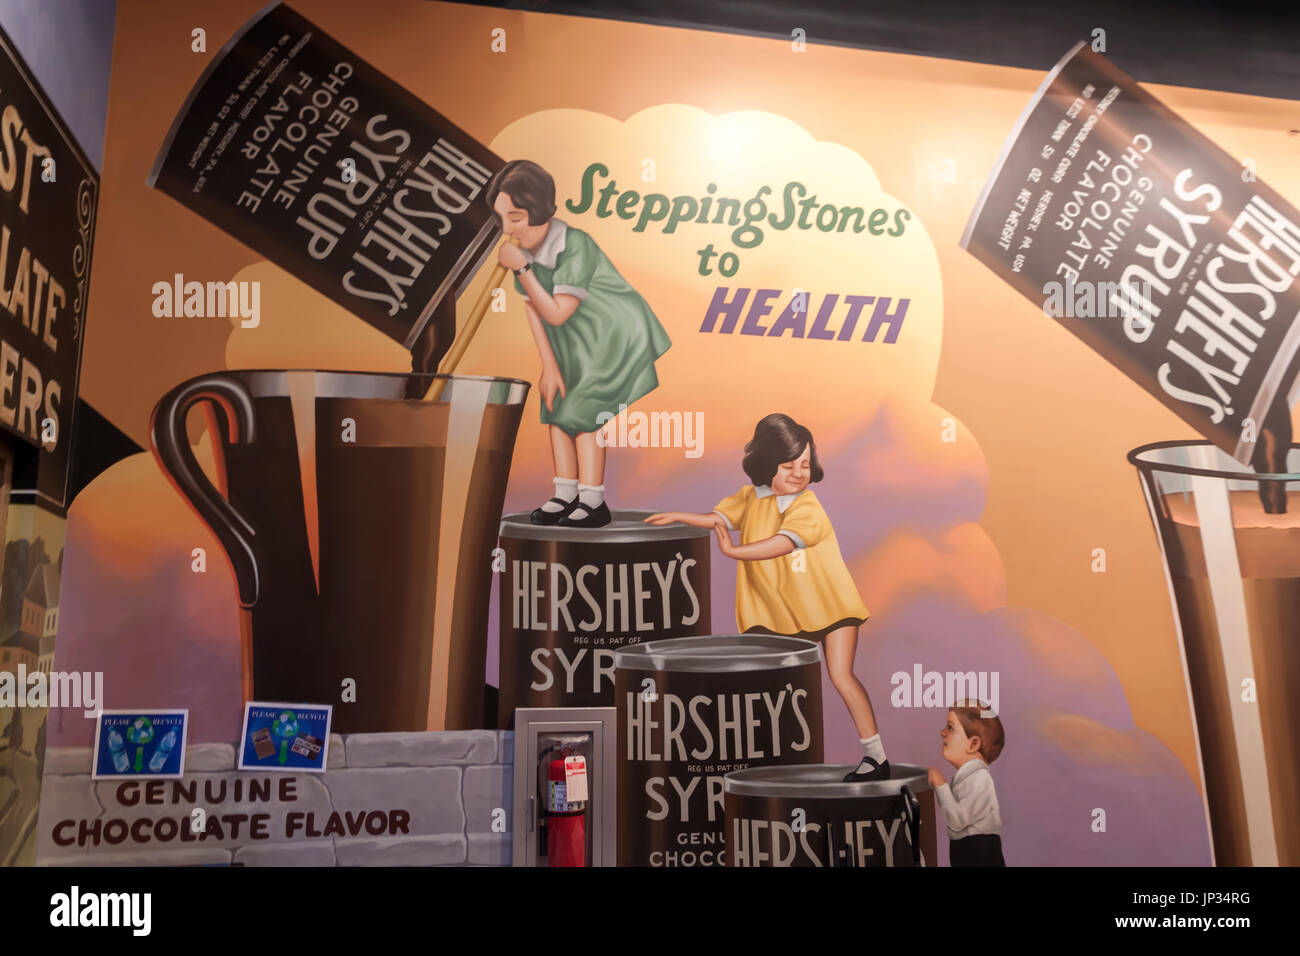 Gemälde von 1930 Hershey Anzeige sagt Schokolade ist gut für die Gesundheit & Wohlbefinden. Kinder klettern Dosen, ein Glas Milch Schokolade zu erreichen. Stockfoto